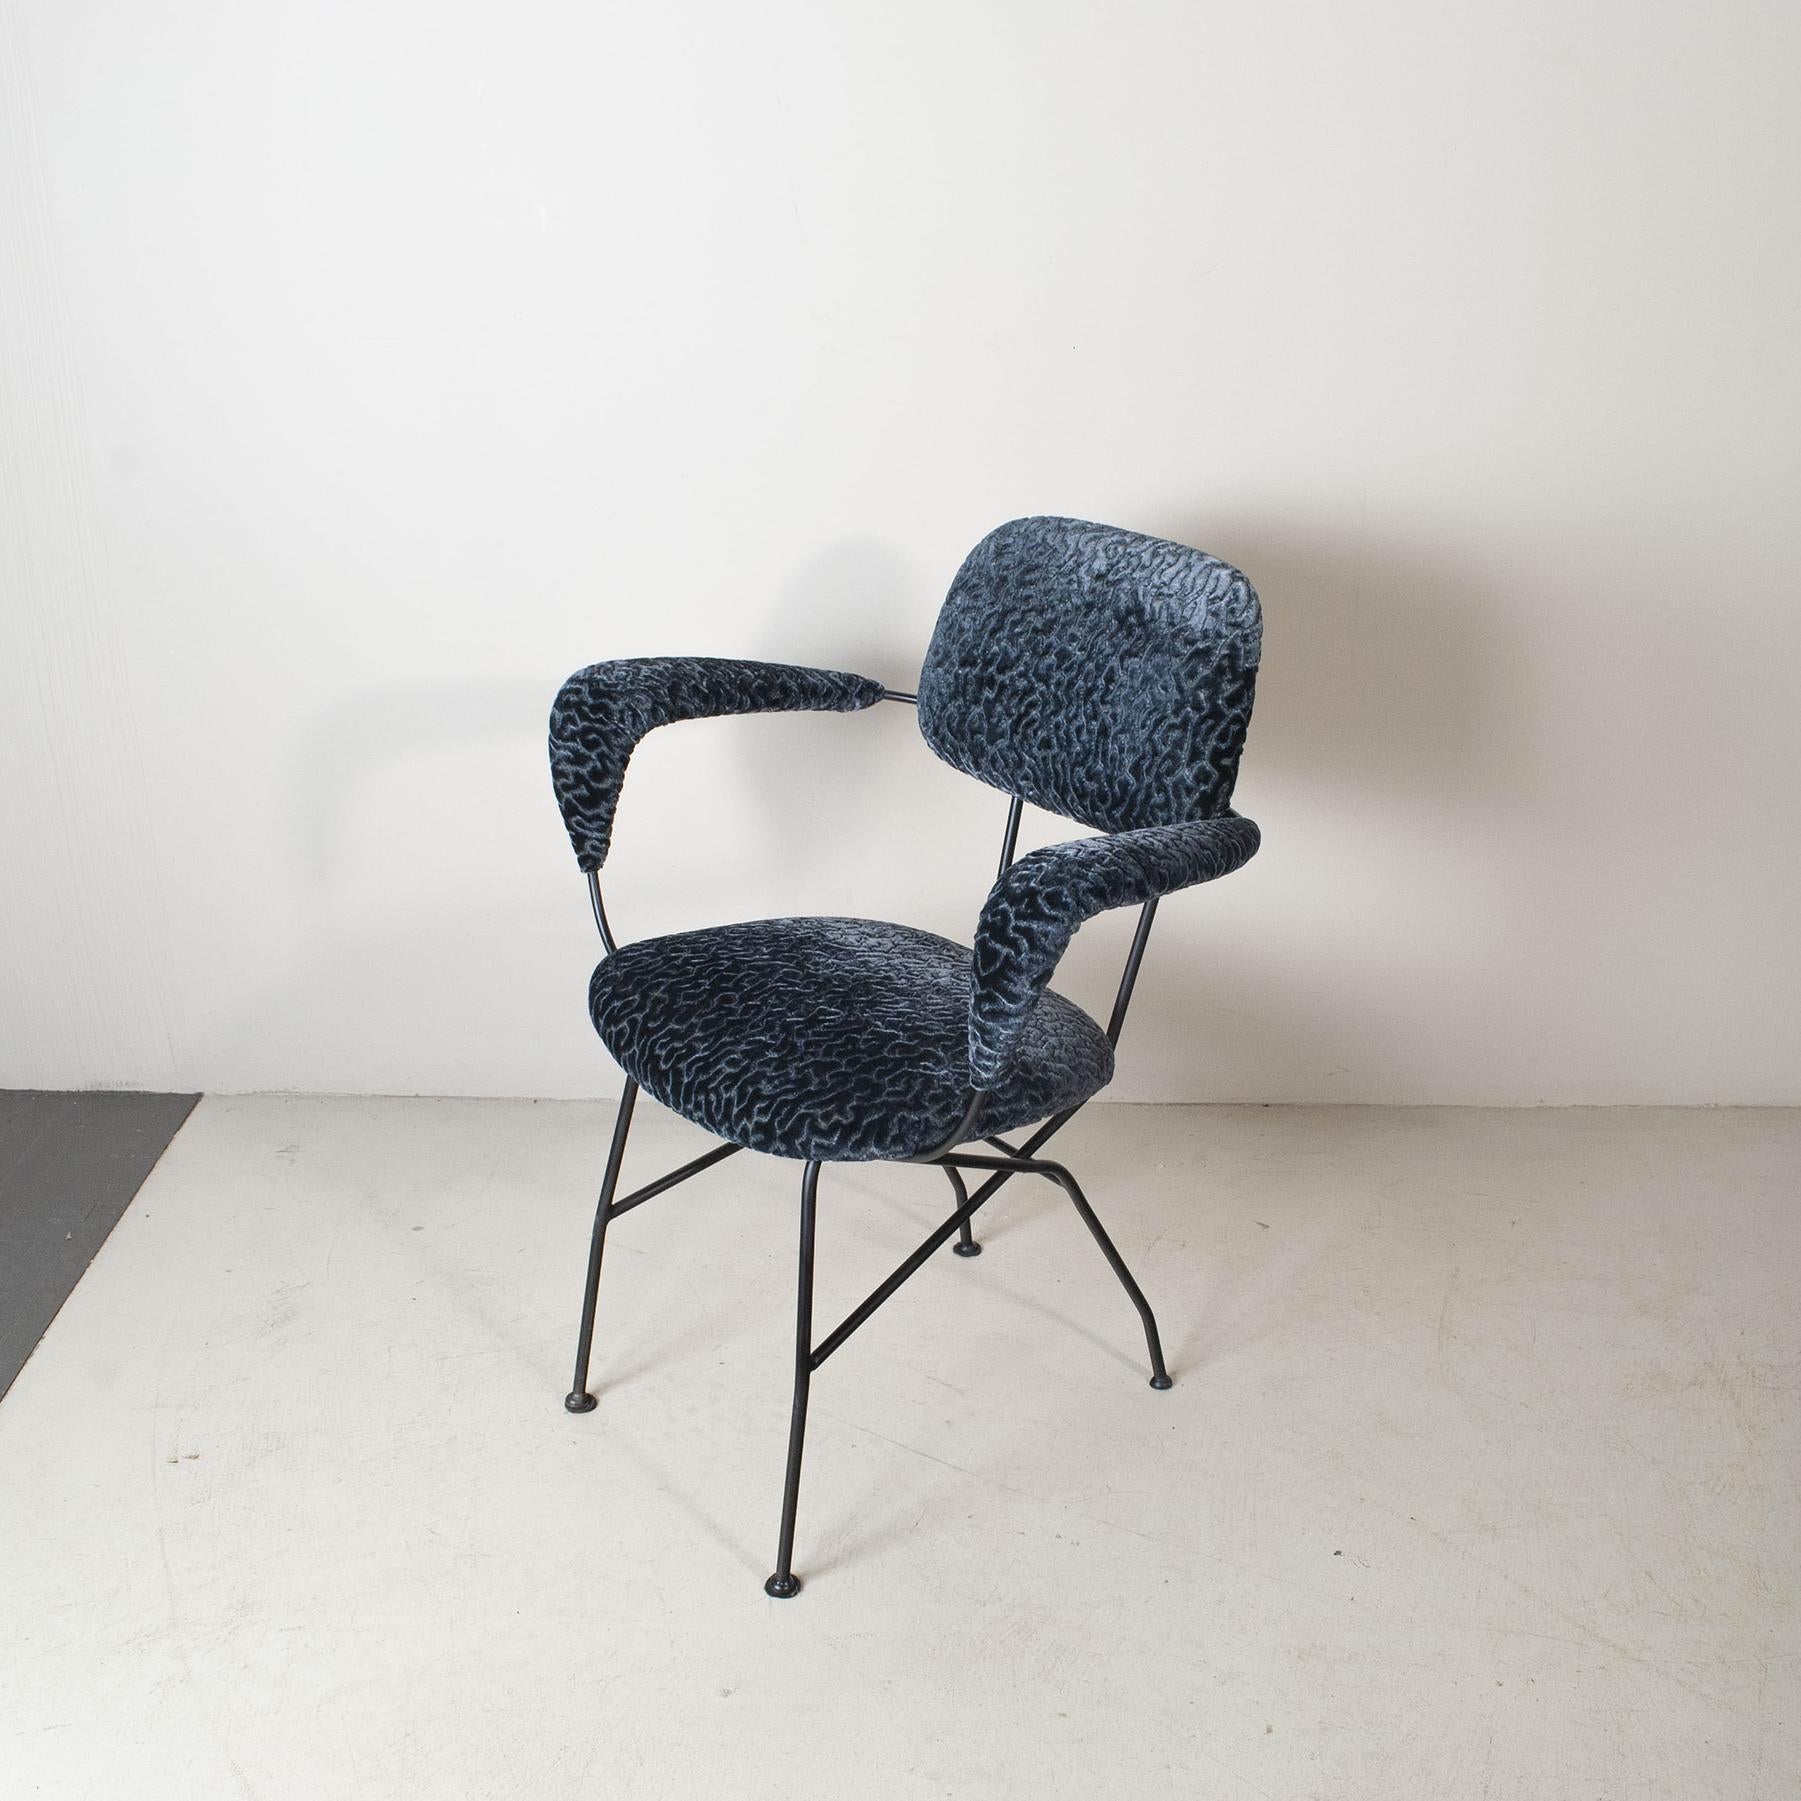 Schöner Stuhl mit maschinell bearbeitetem und gebogenem Metallgestell Designer Gastone Rinaldi für RIMA 1950er Jahre

Gastone Rinaldi wurde 1920 in Padua geboren und schloss sein Studium der Buchhaltung am Institut Belzoni ab. Zunächst arbeitete er